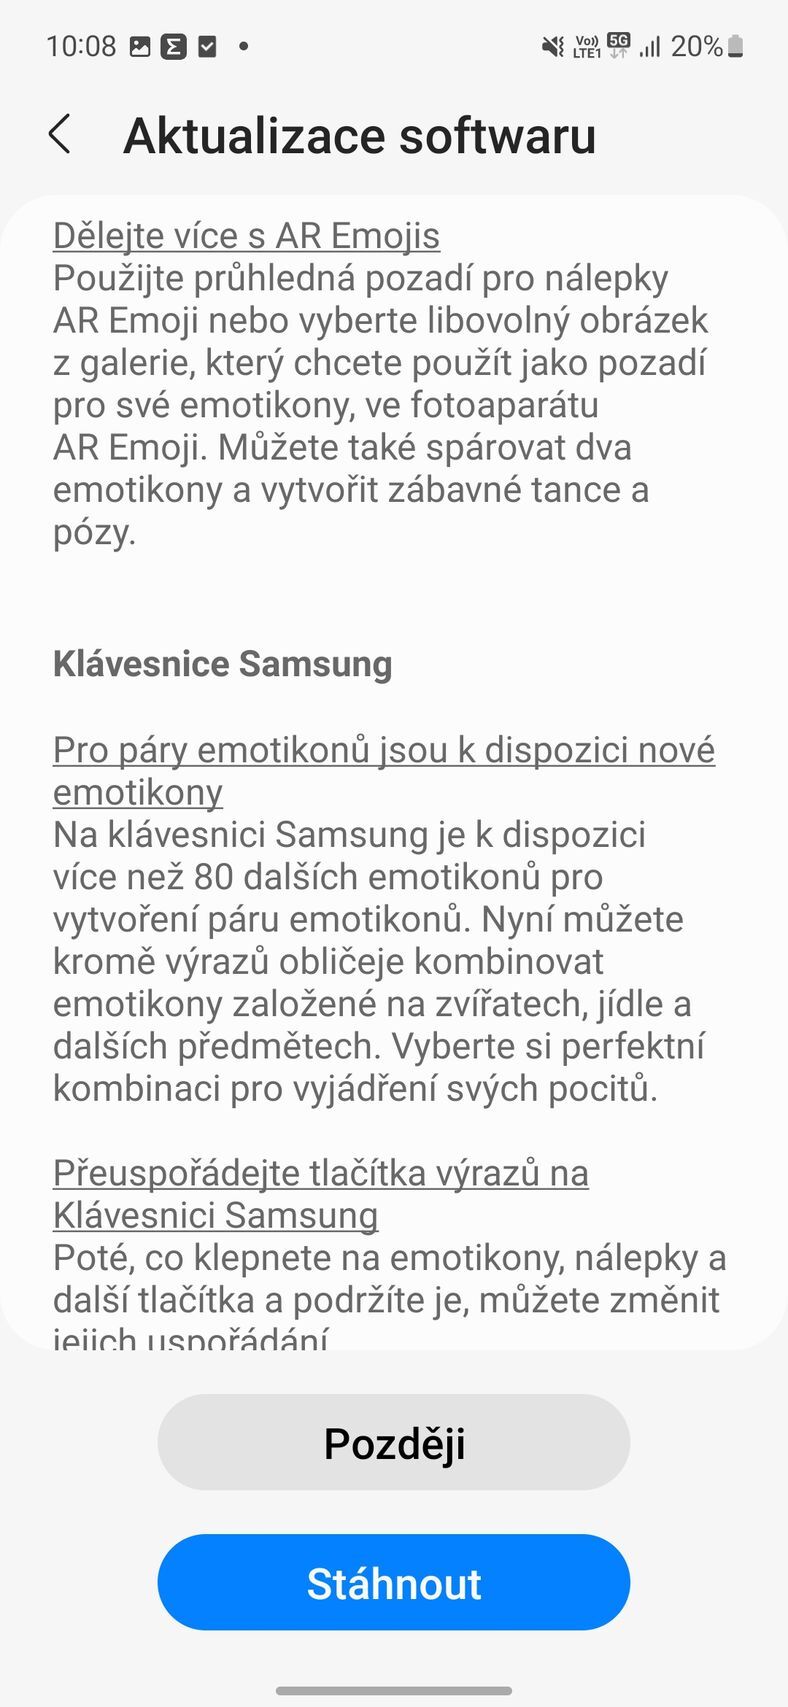 Samsung Galaxy S21 FE